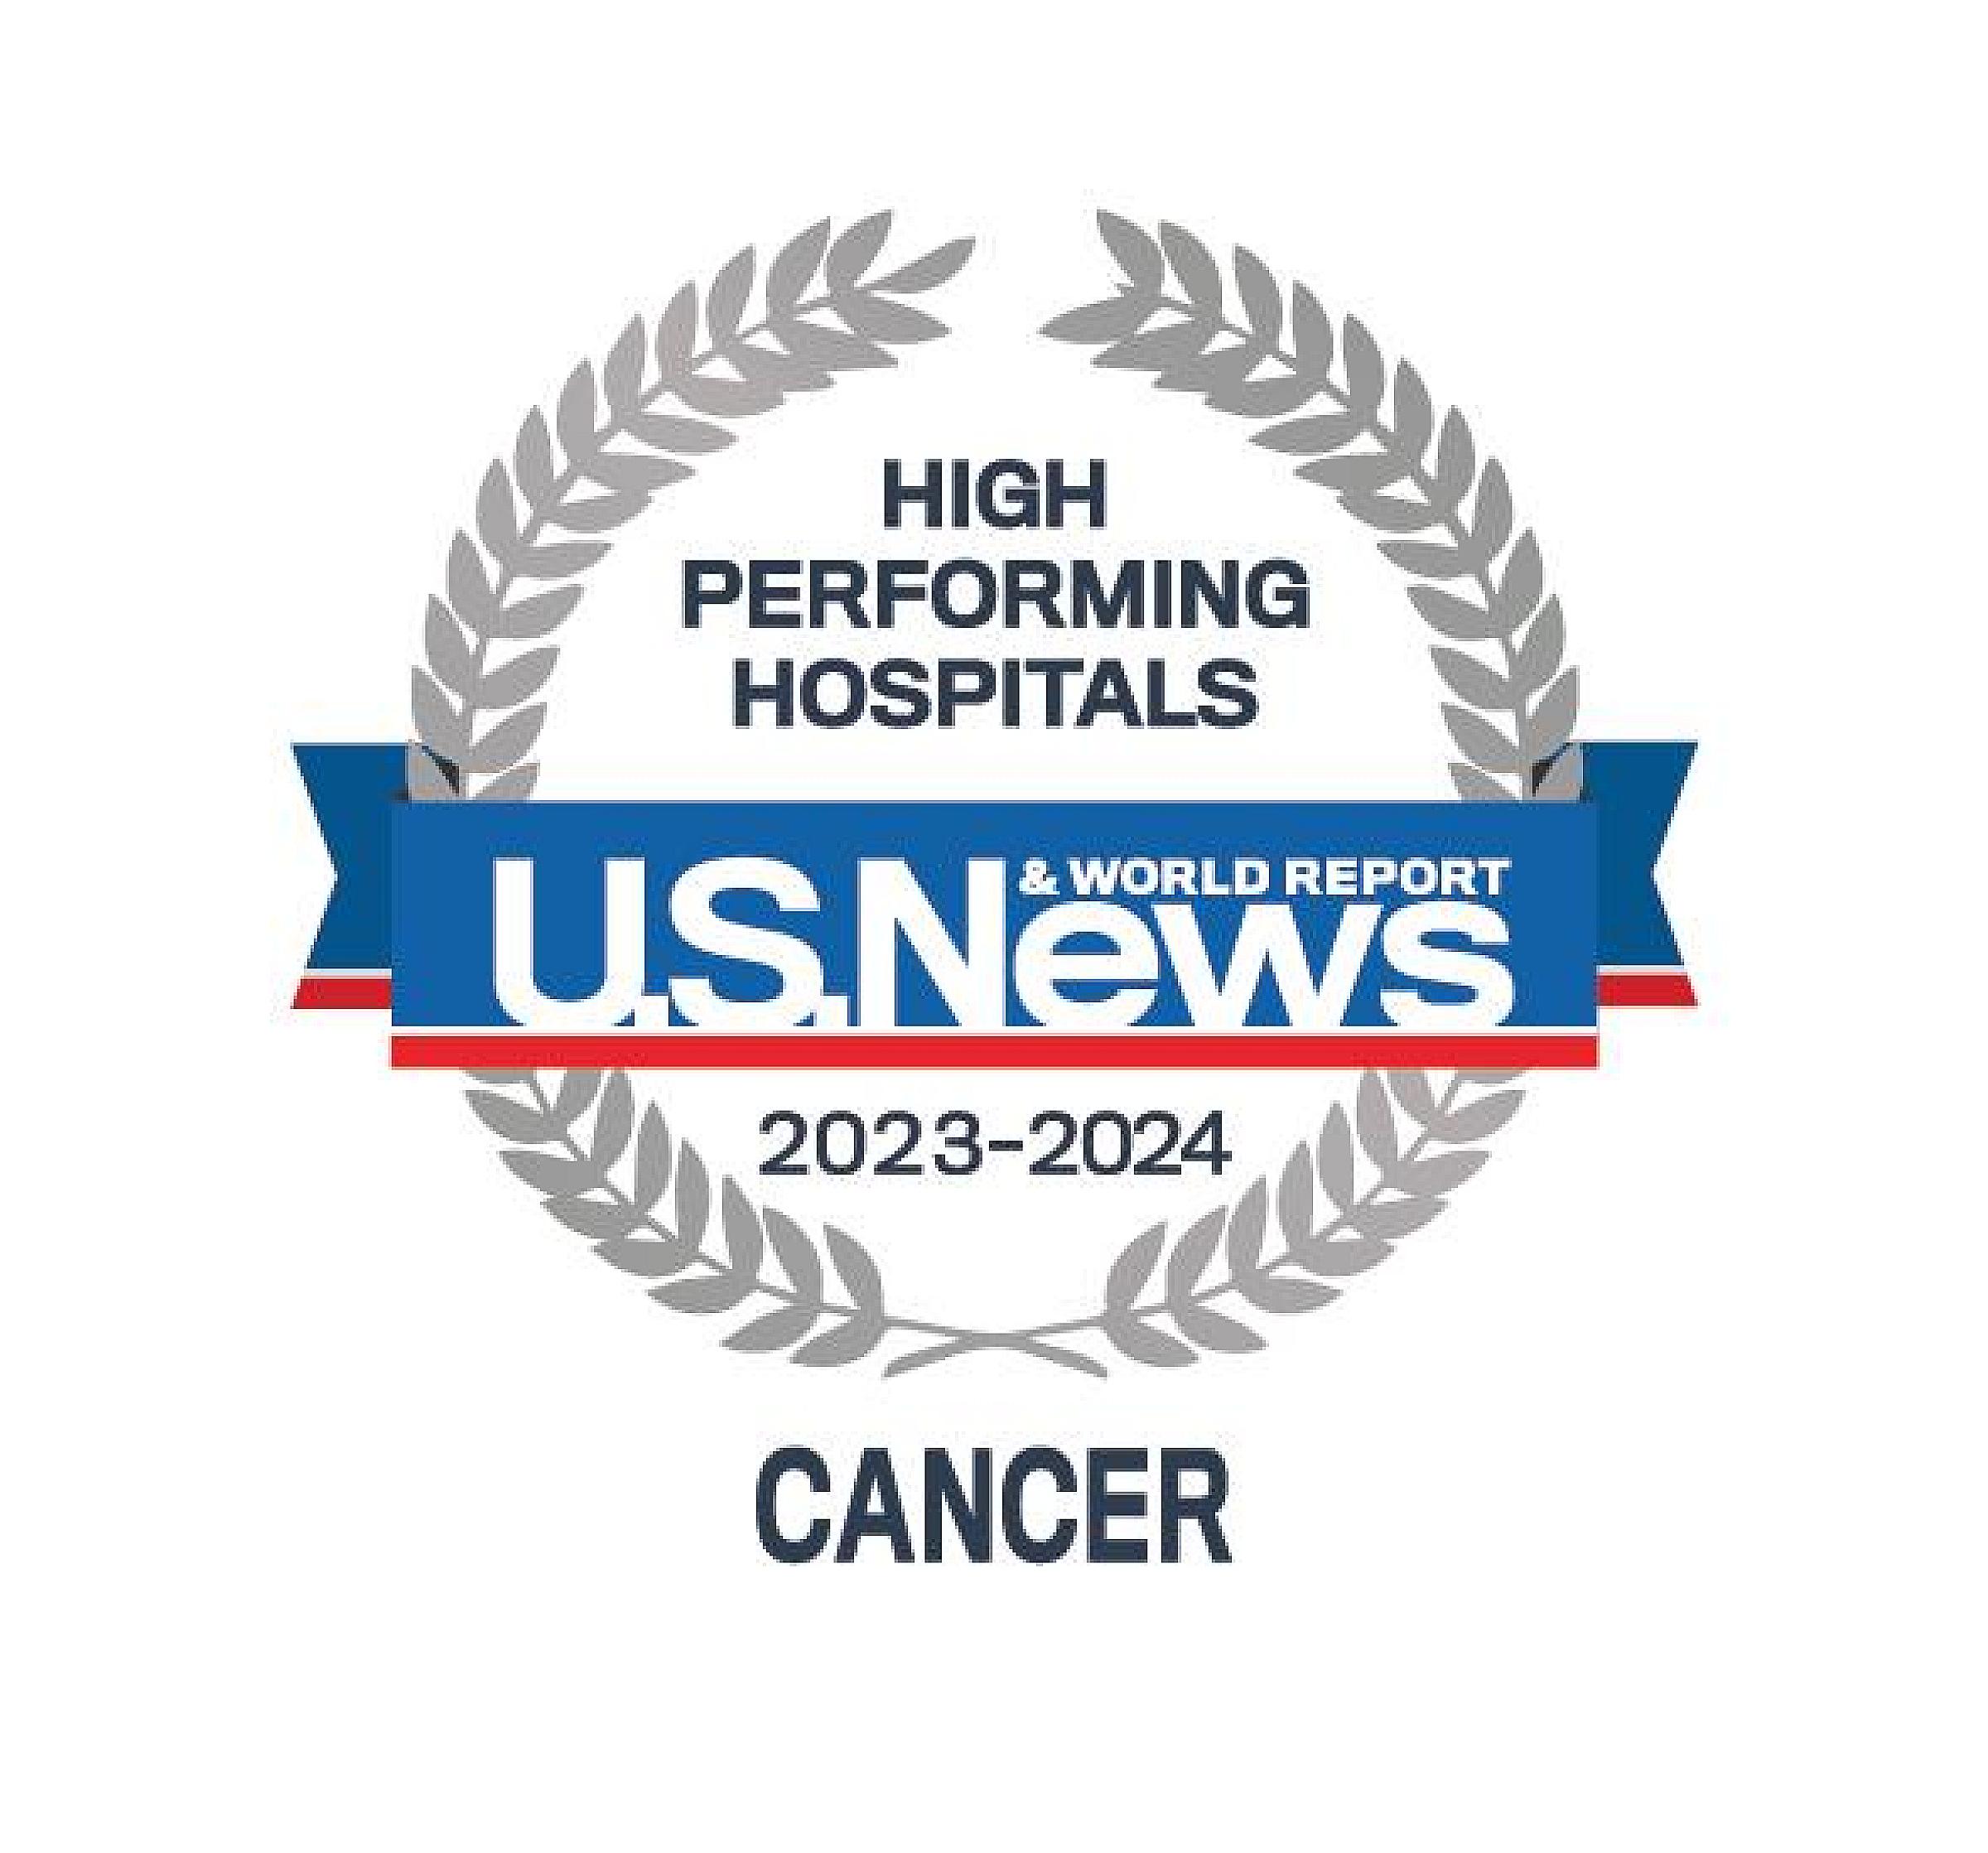 U.S. News High Performing Hospitals 2023-2024